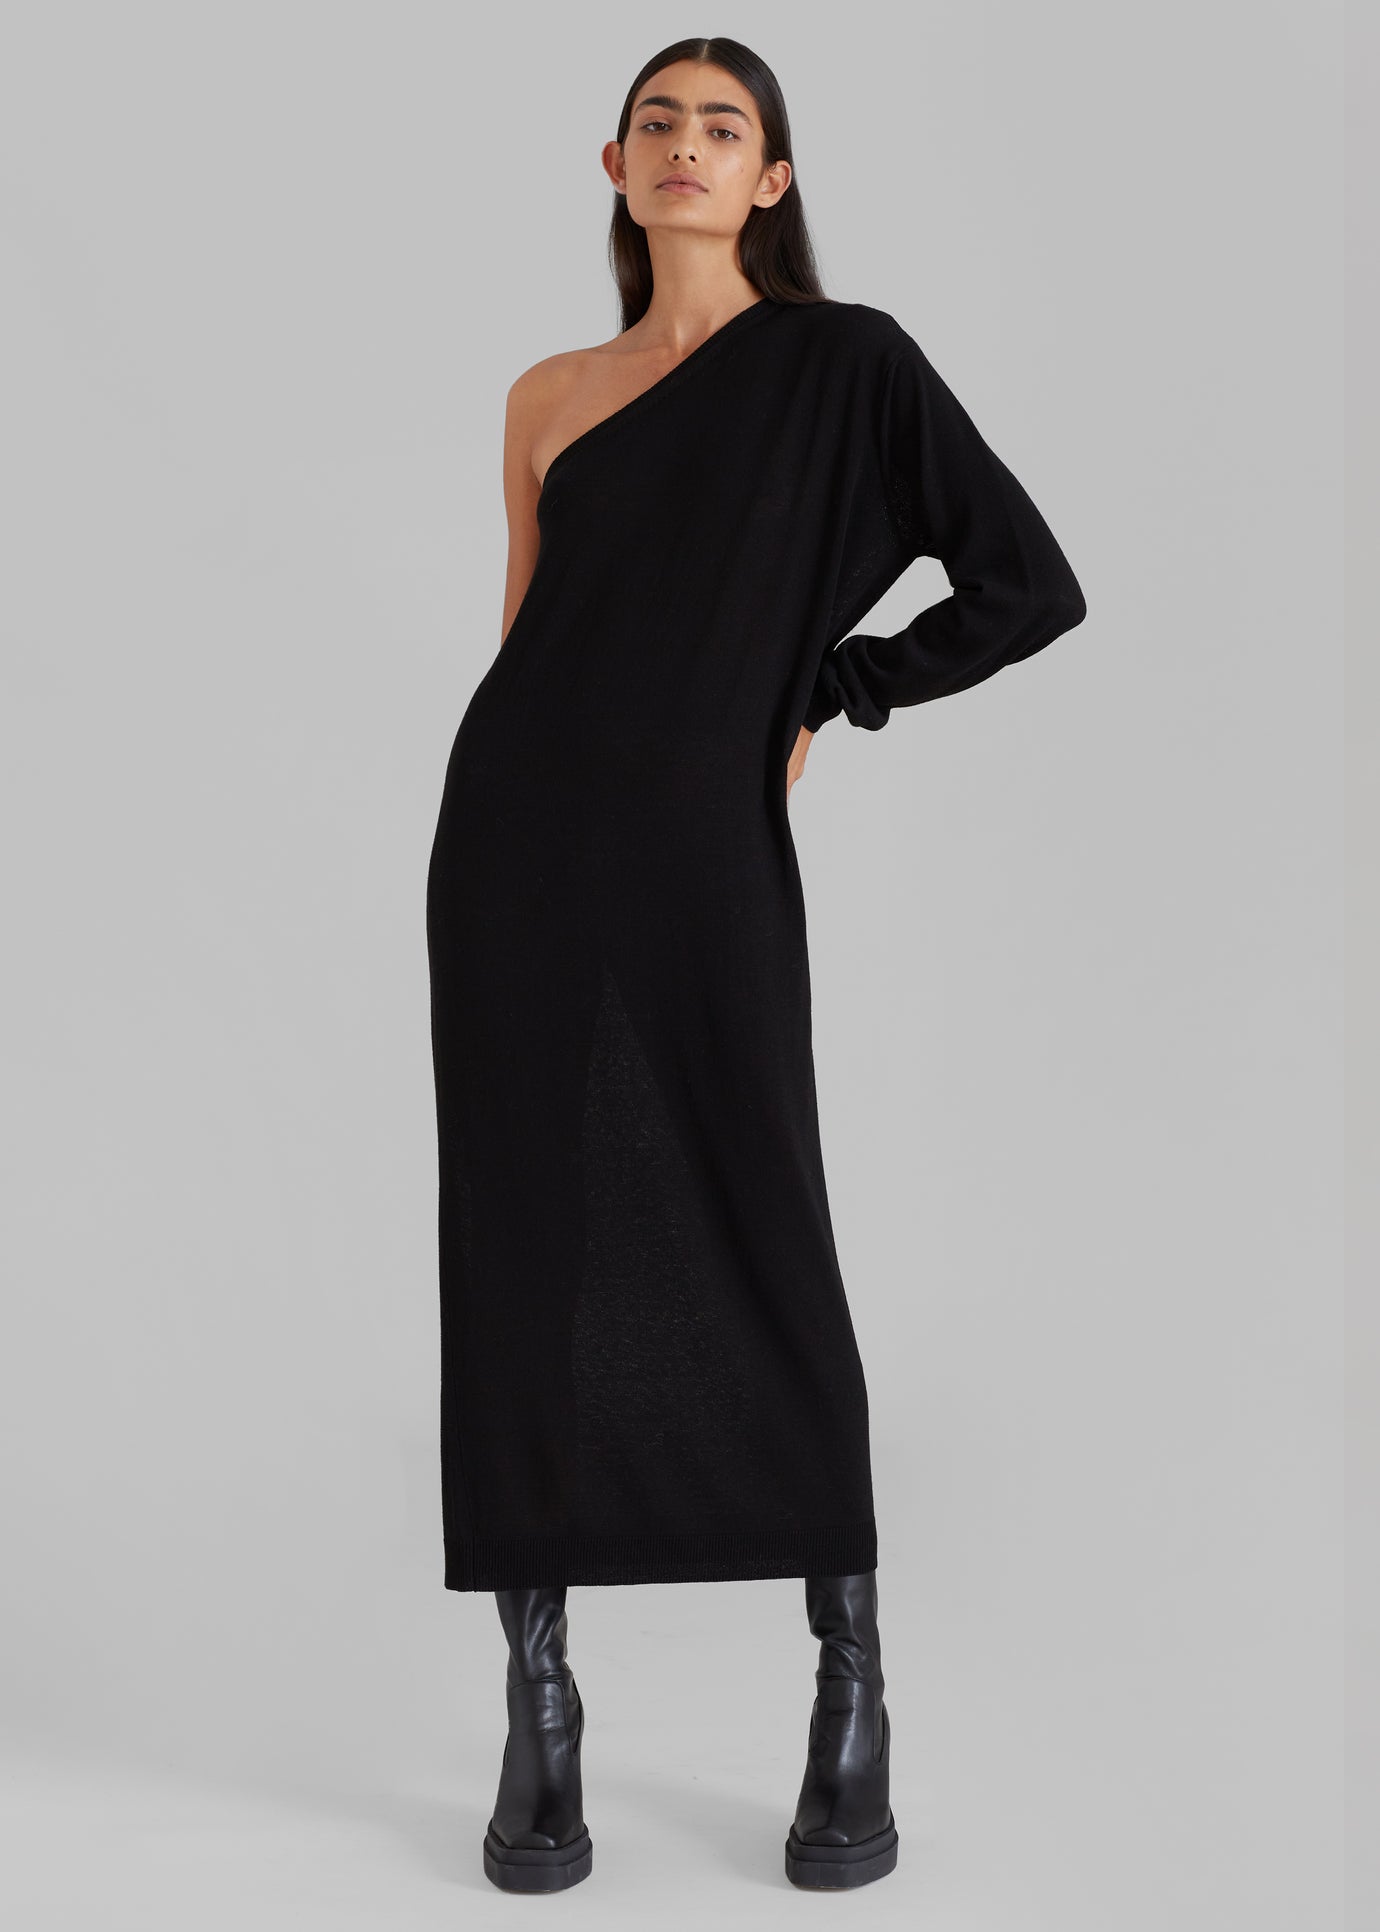 Lina One Shoulder Loose Knit Dress - Black